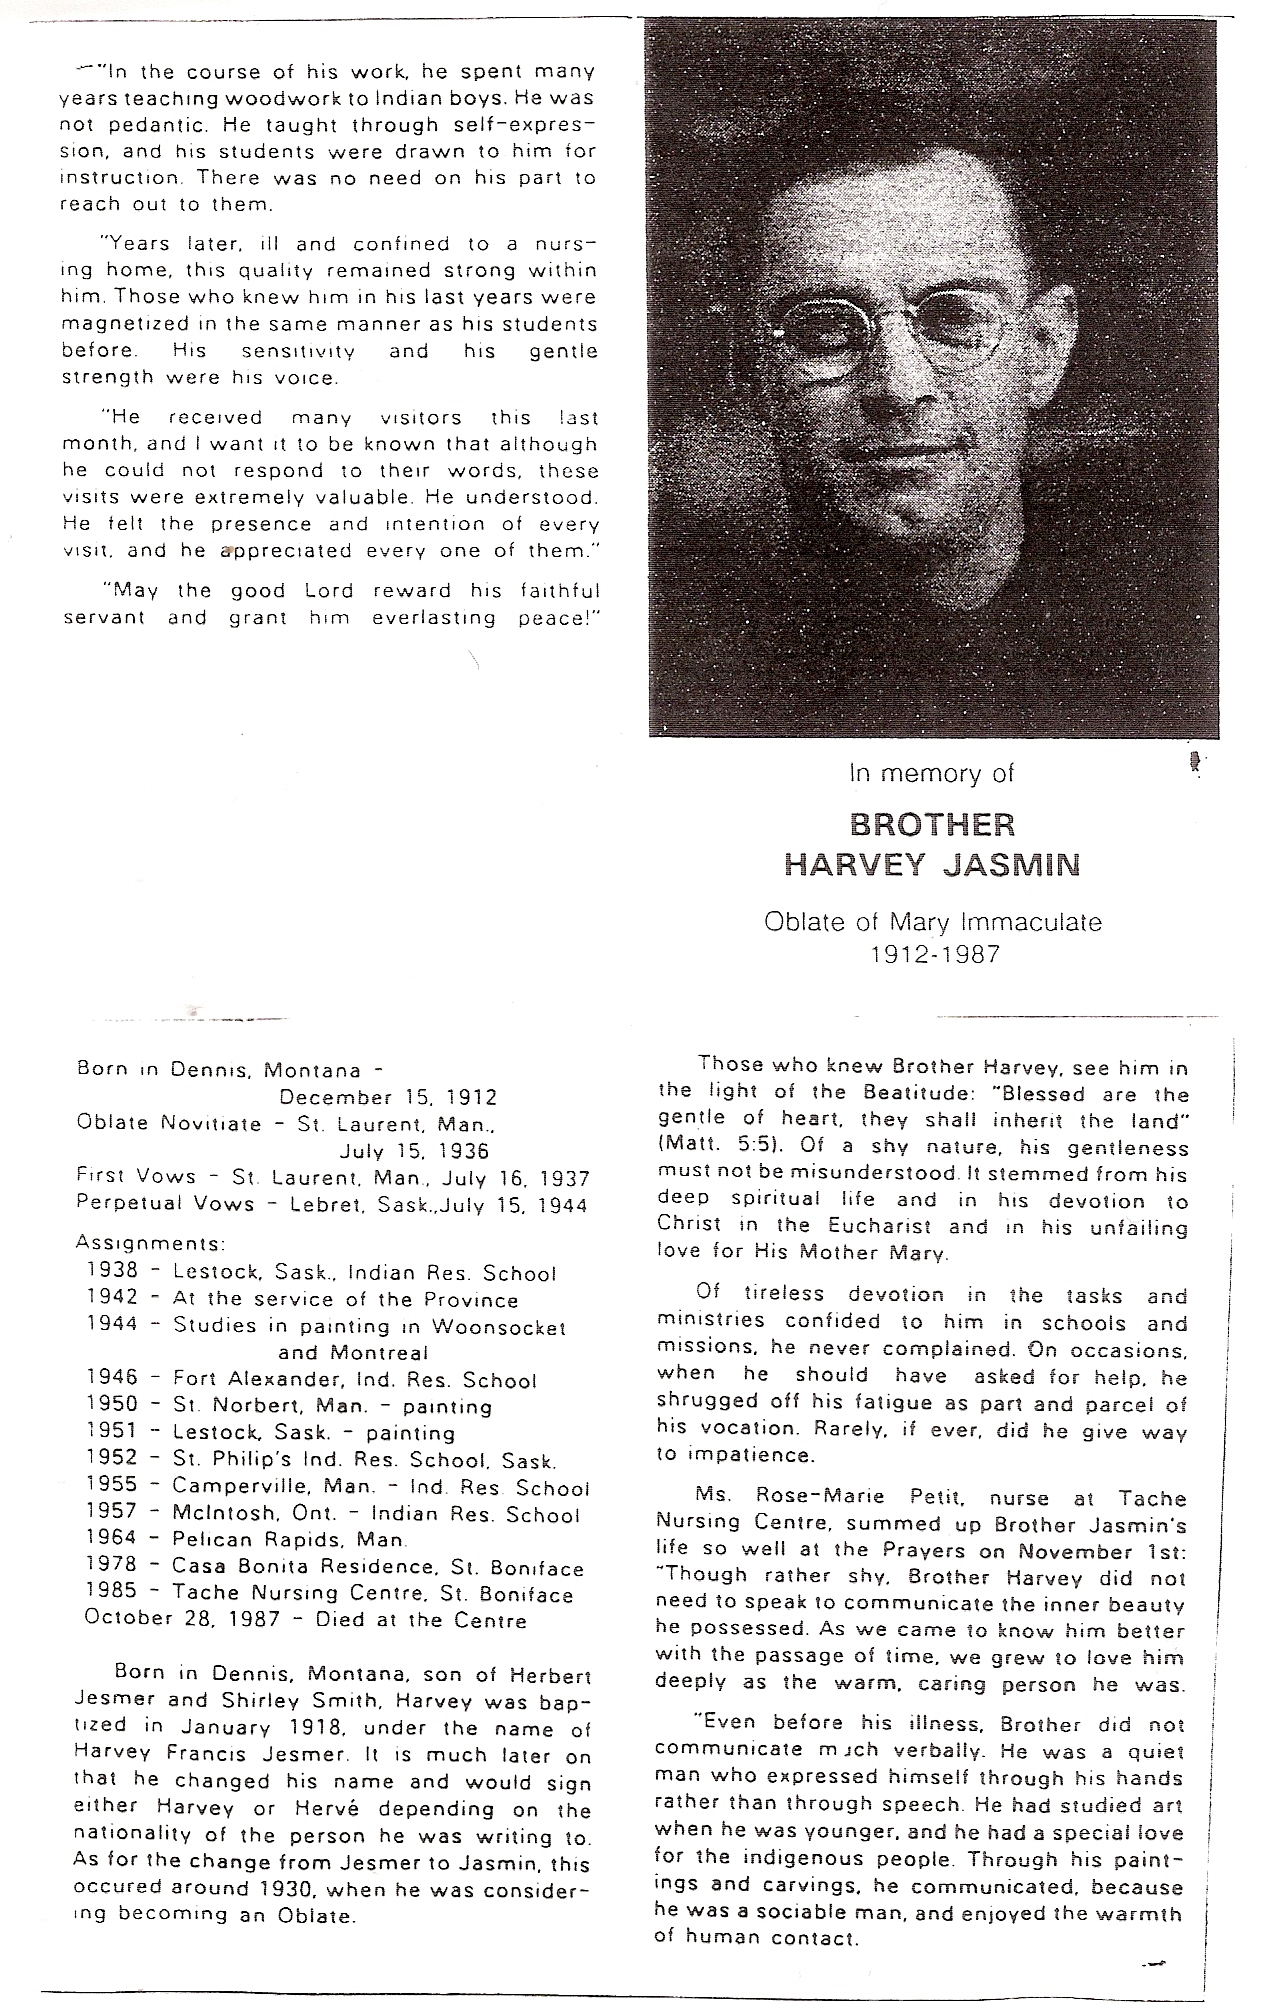 Harvey Jesmers funeral info